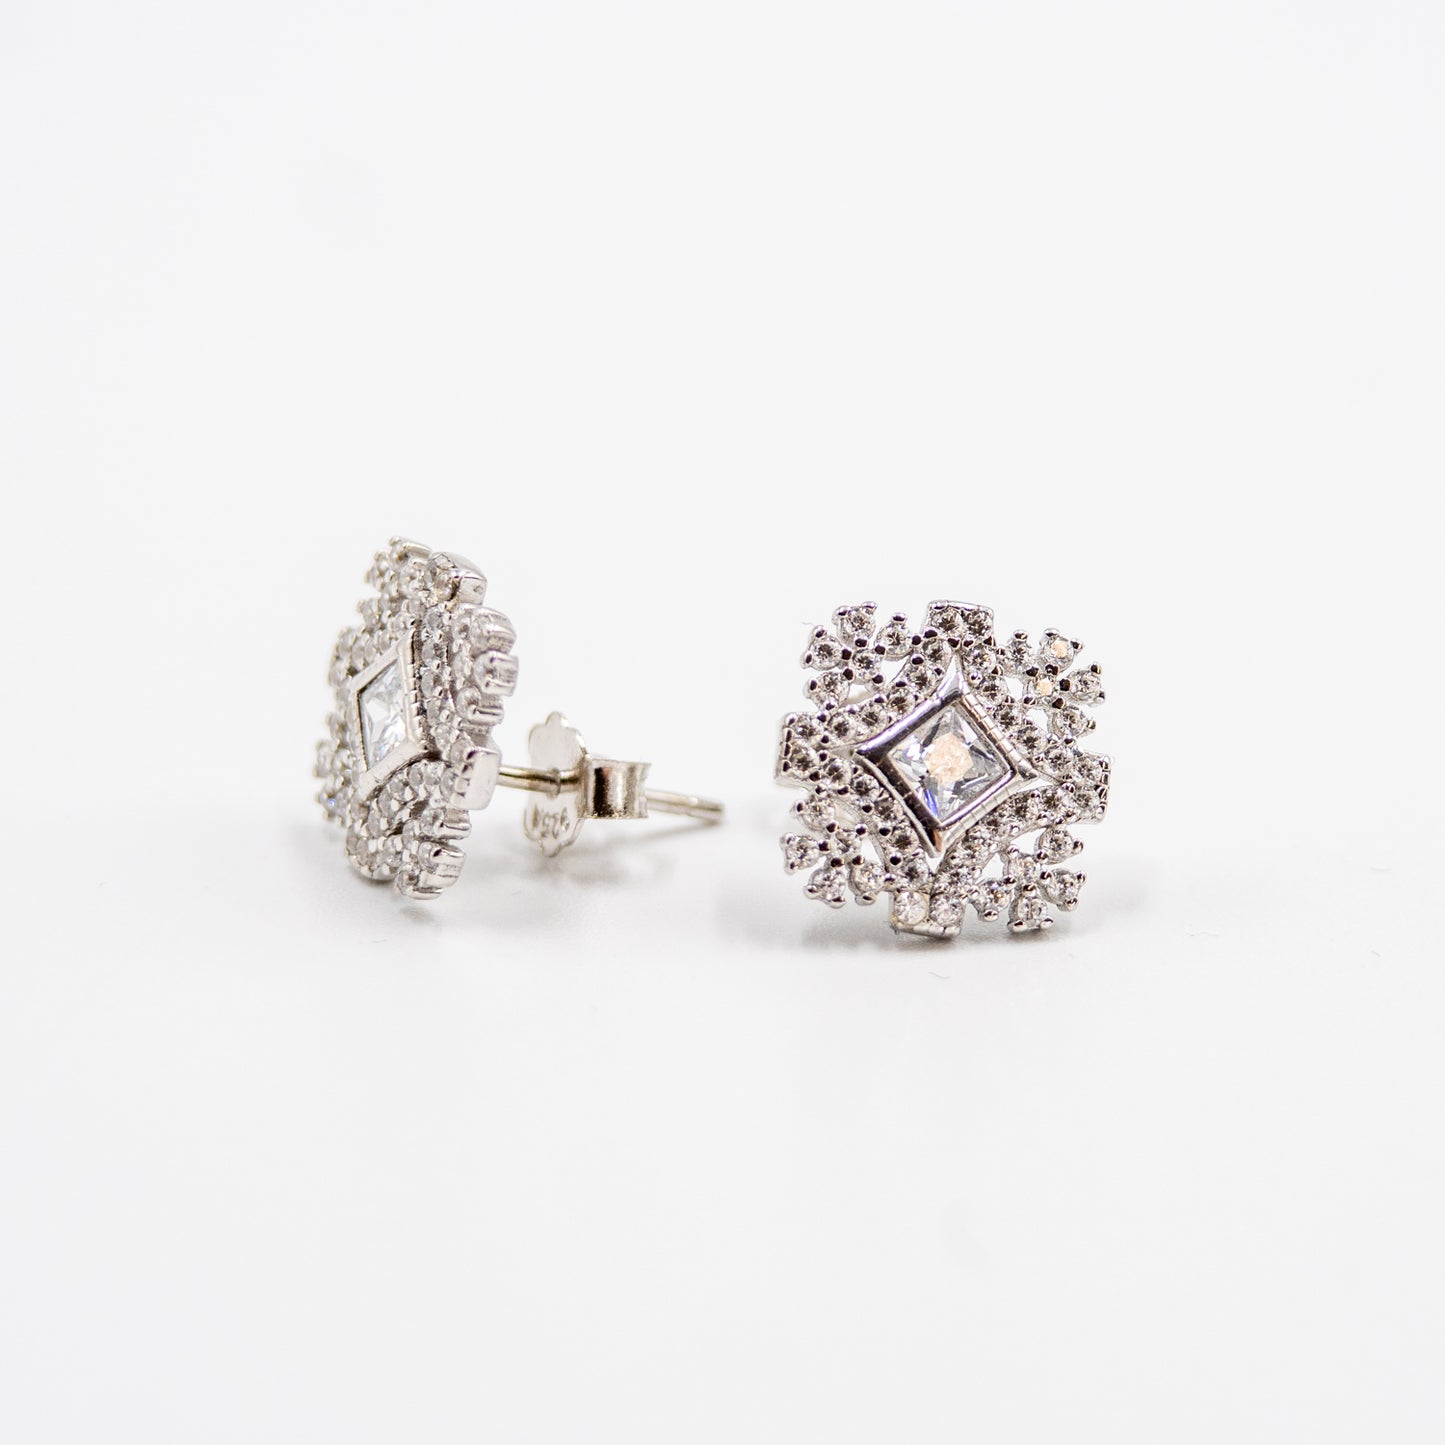 DK-925-203 sterling silver earrings